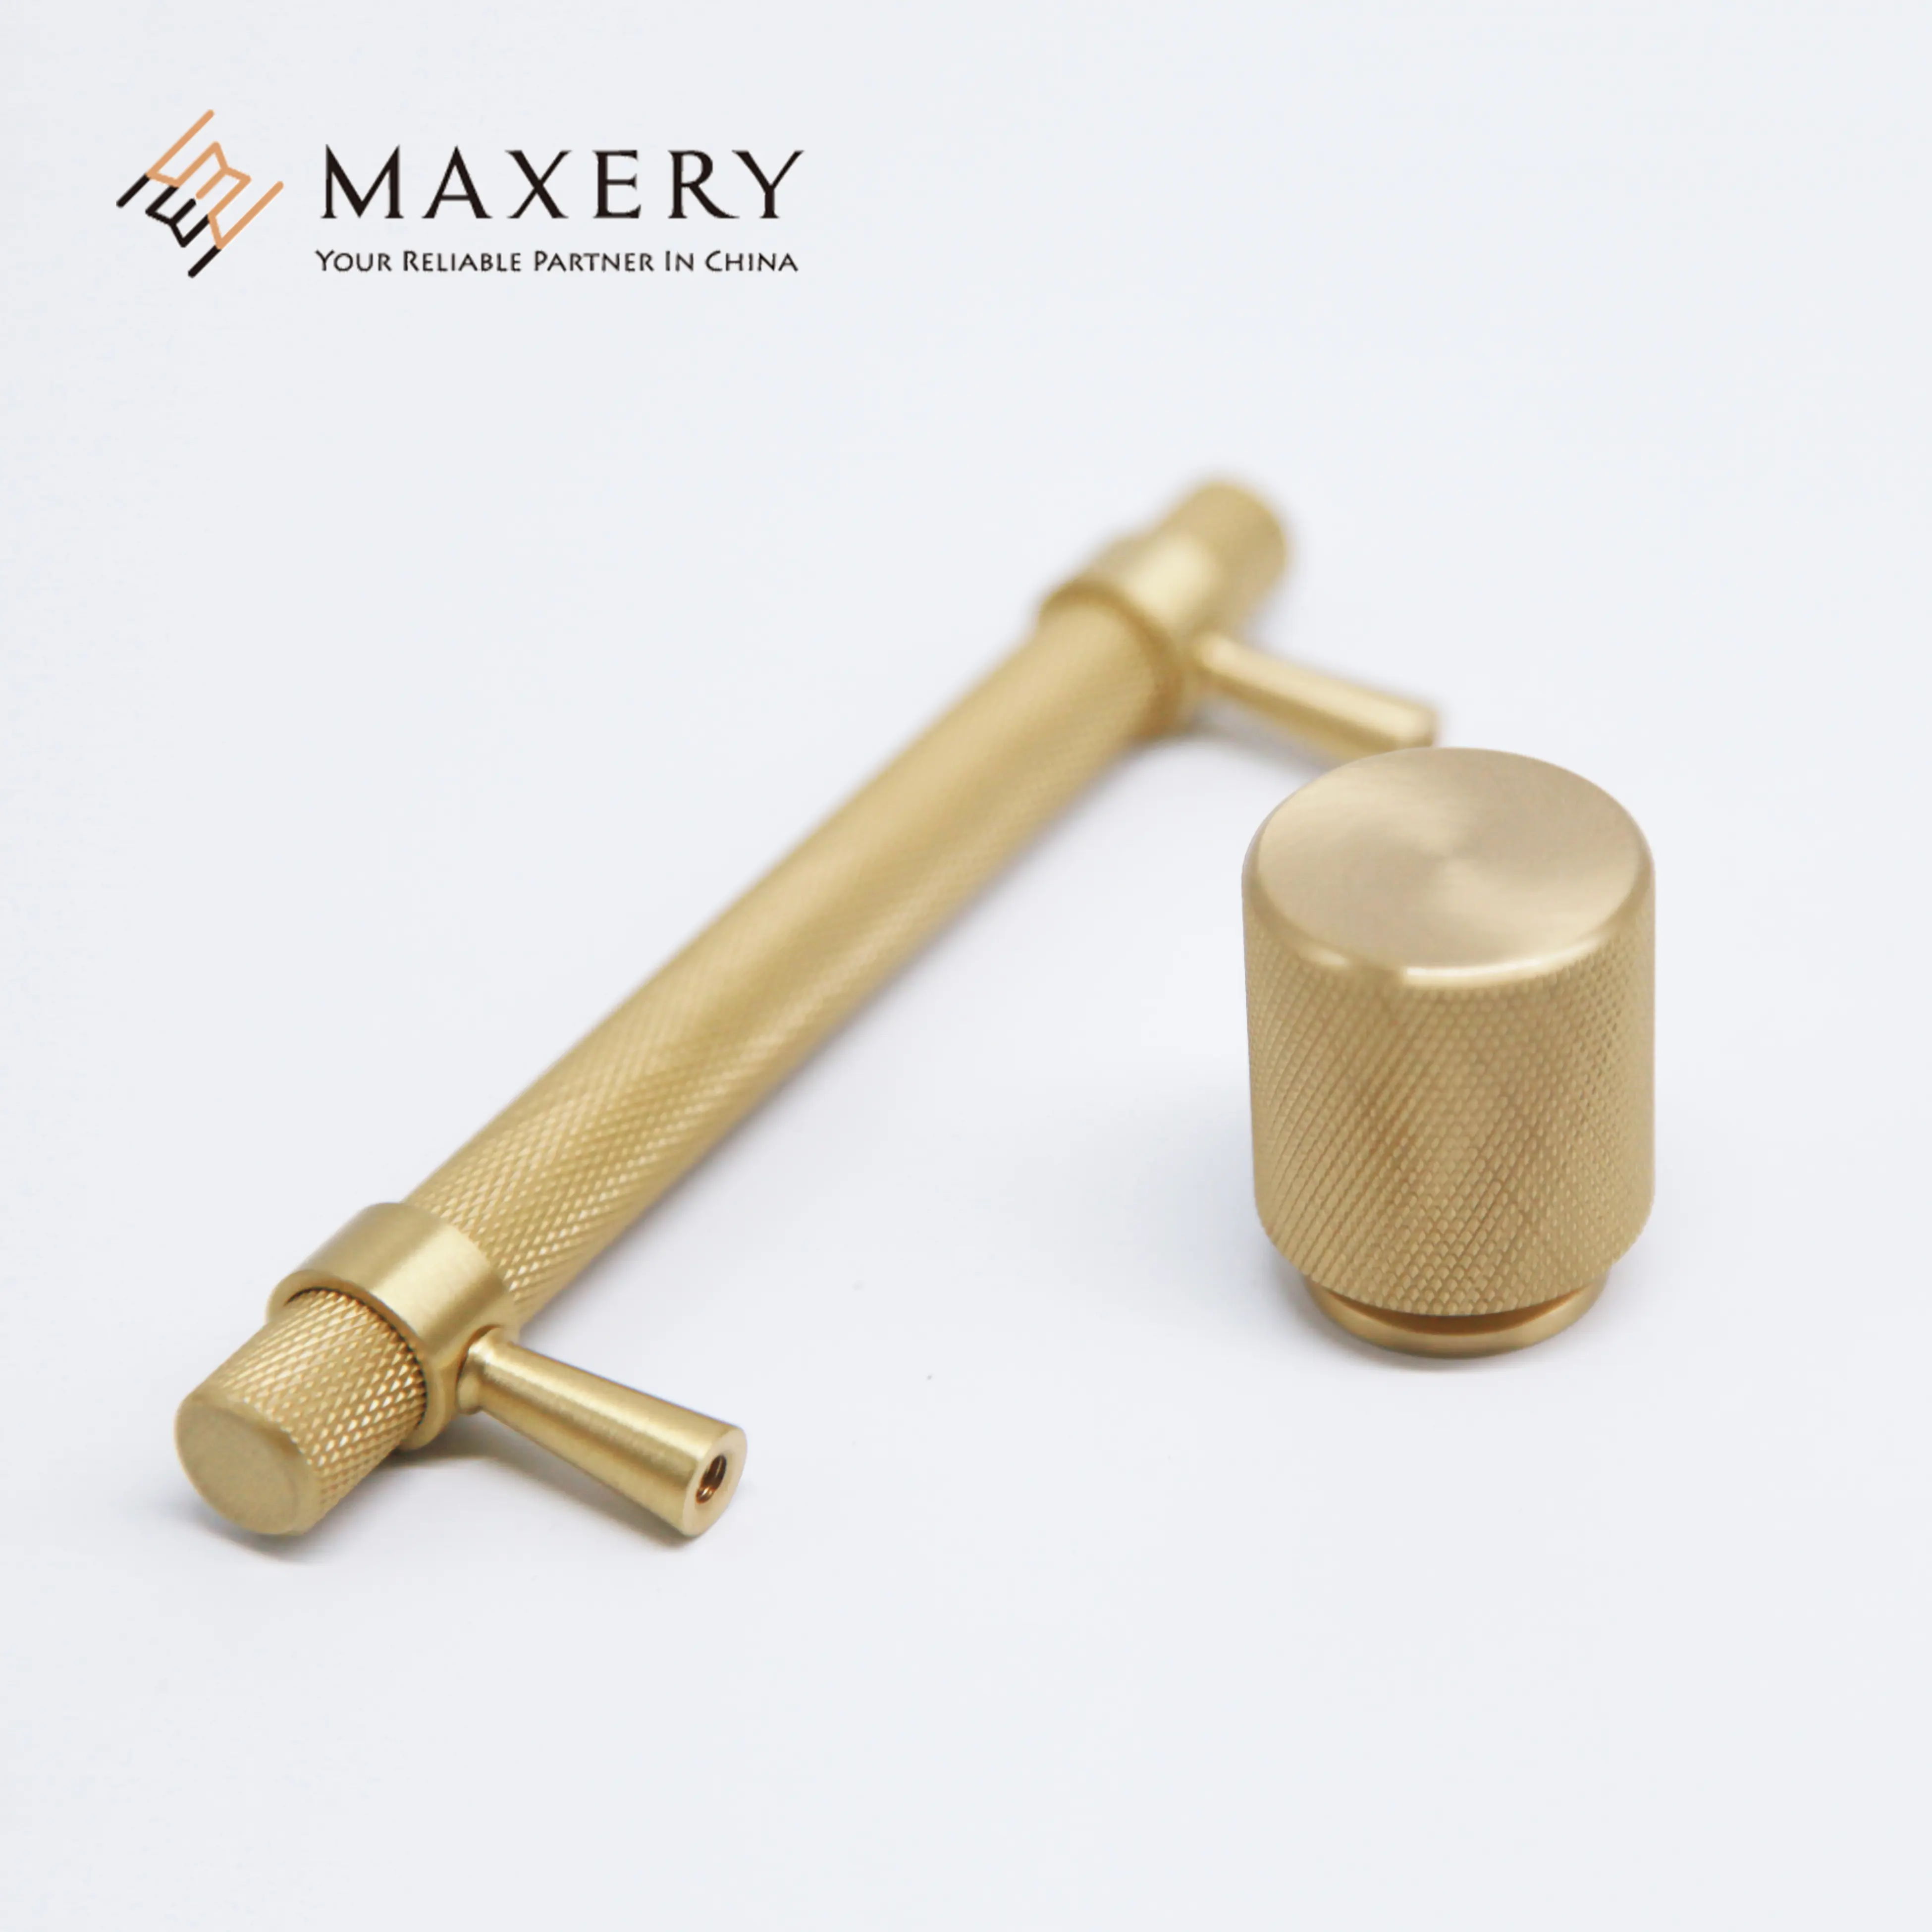 Maxery Brass Xử Lý Đồ Nội Thất Và Nút Bấm Trang Trí Nội Thất Có Khía Xi Lanh Solid Brass Tay Nắm Tủ Thay Thế Tay Nắm Cửa